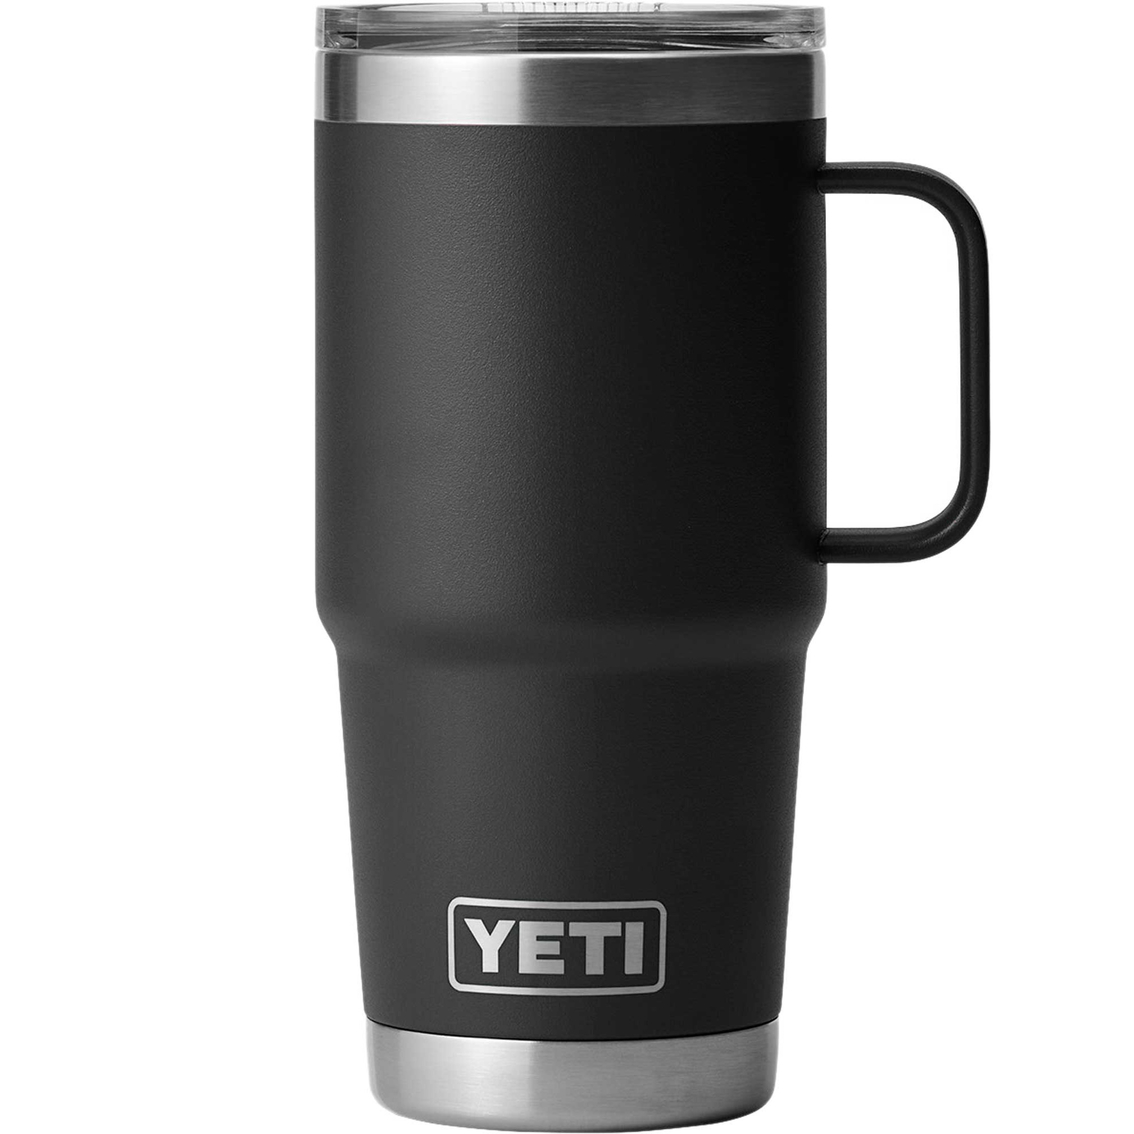 Yeti Rambler 20 Oz. Travel Mug With Stronghold Lid